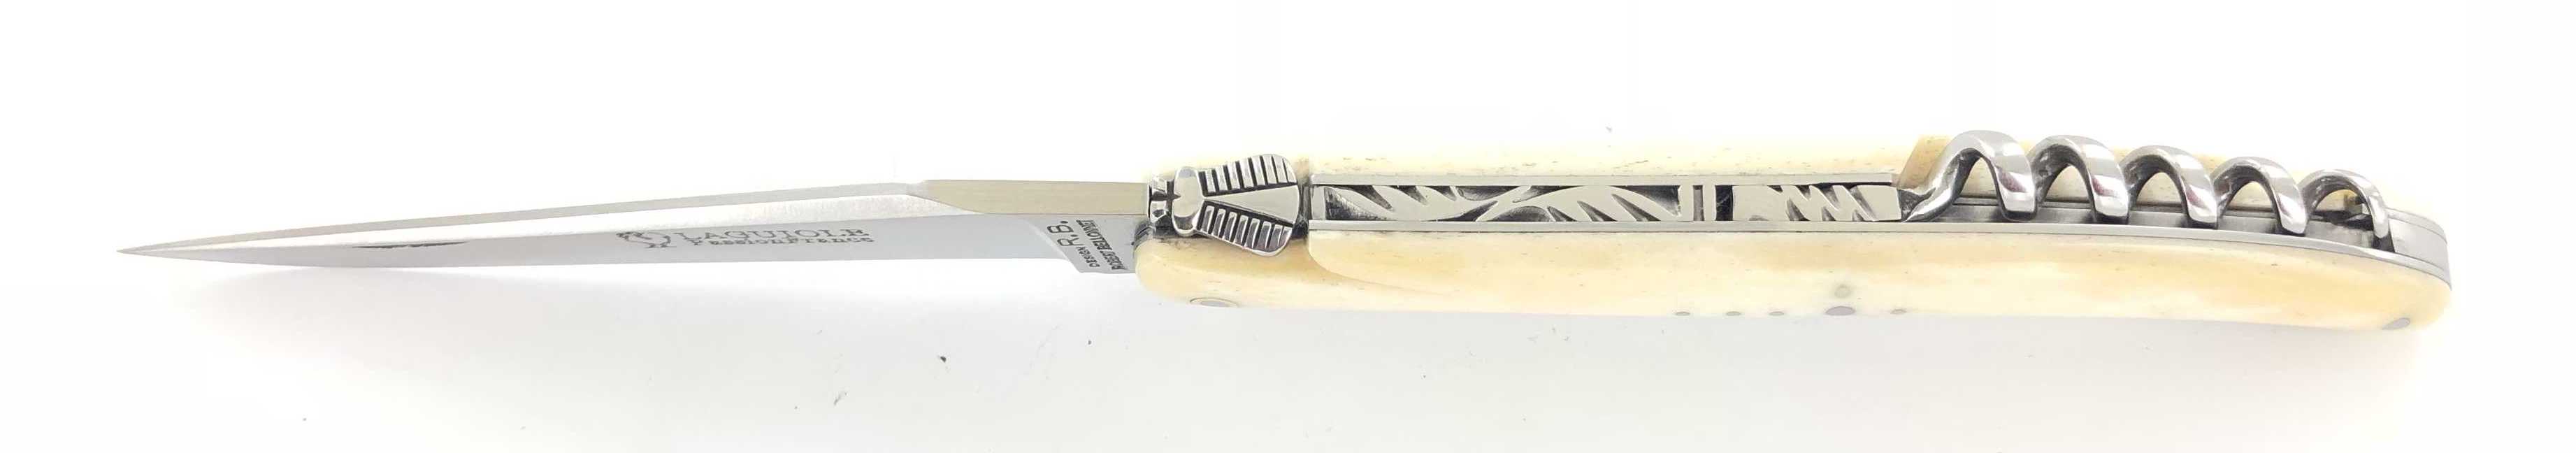 Knives Design Beillonnet MOF - Laguiole 11 cm - ScrewCork - Camel ...